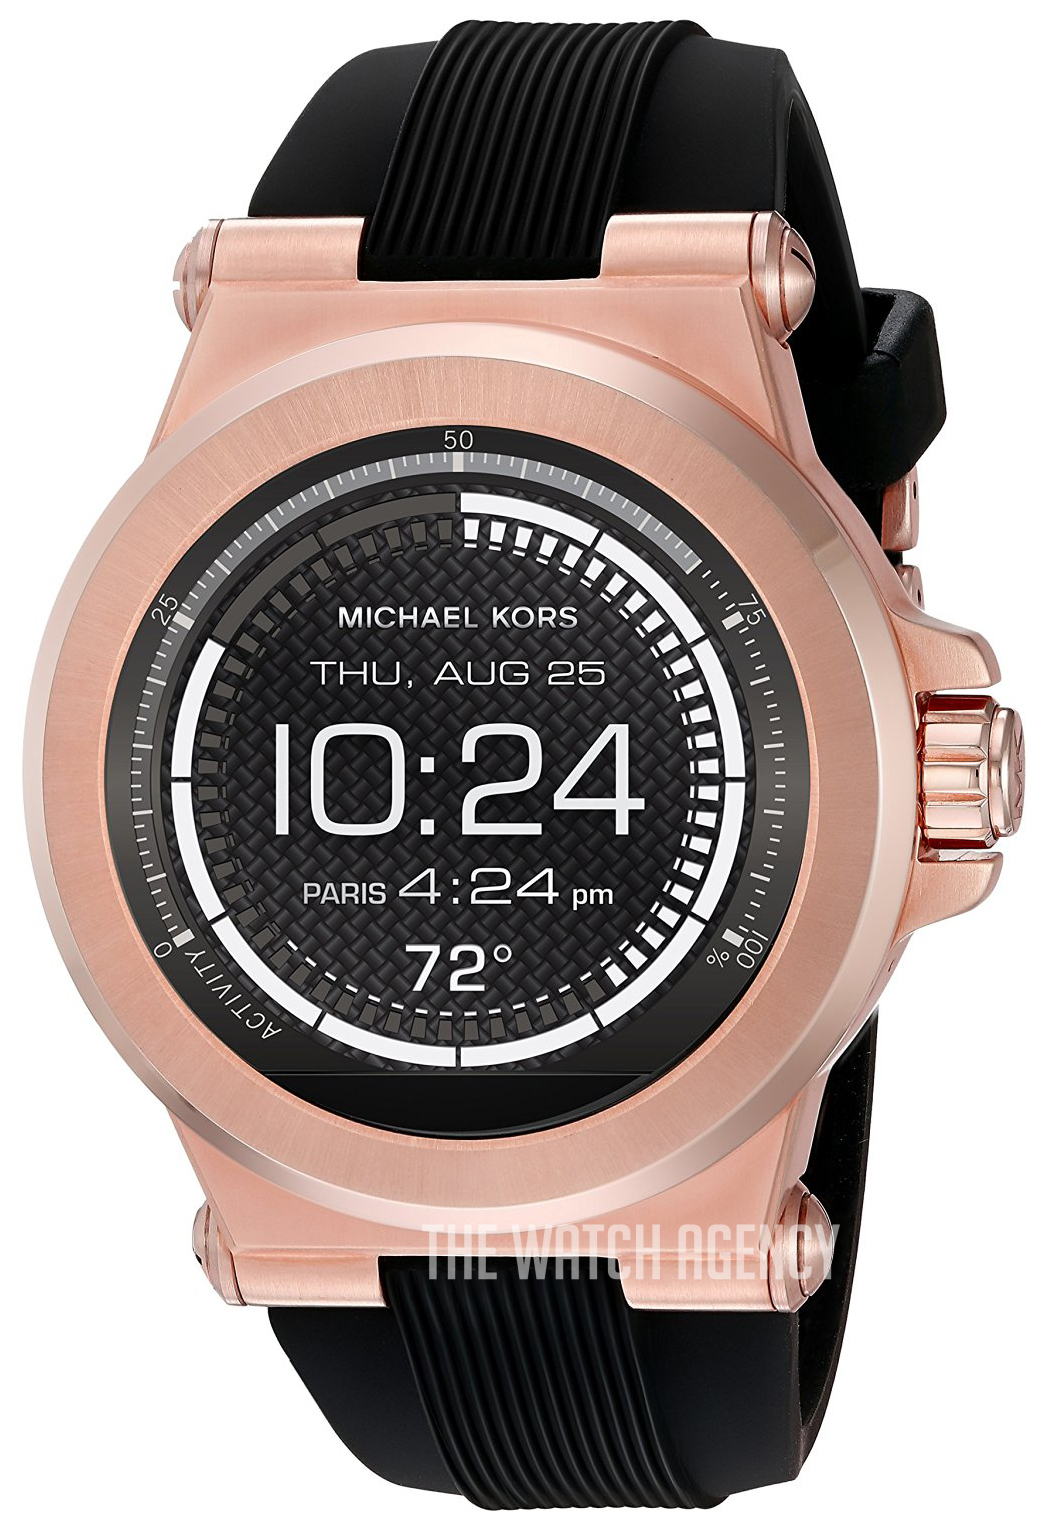 michael kors smartwatch mkt5010